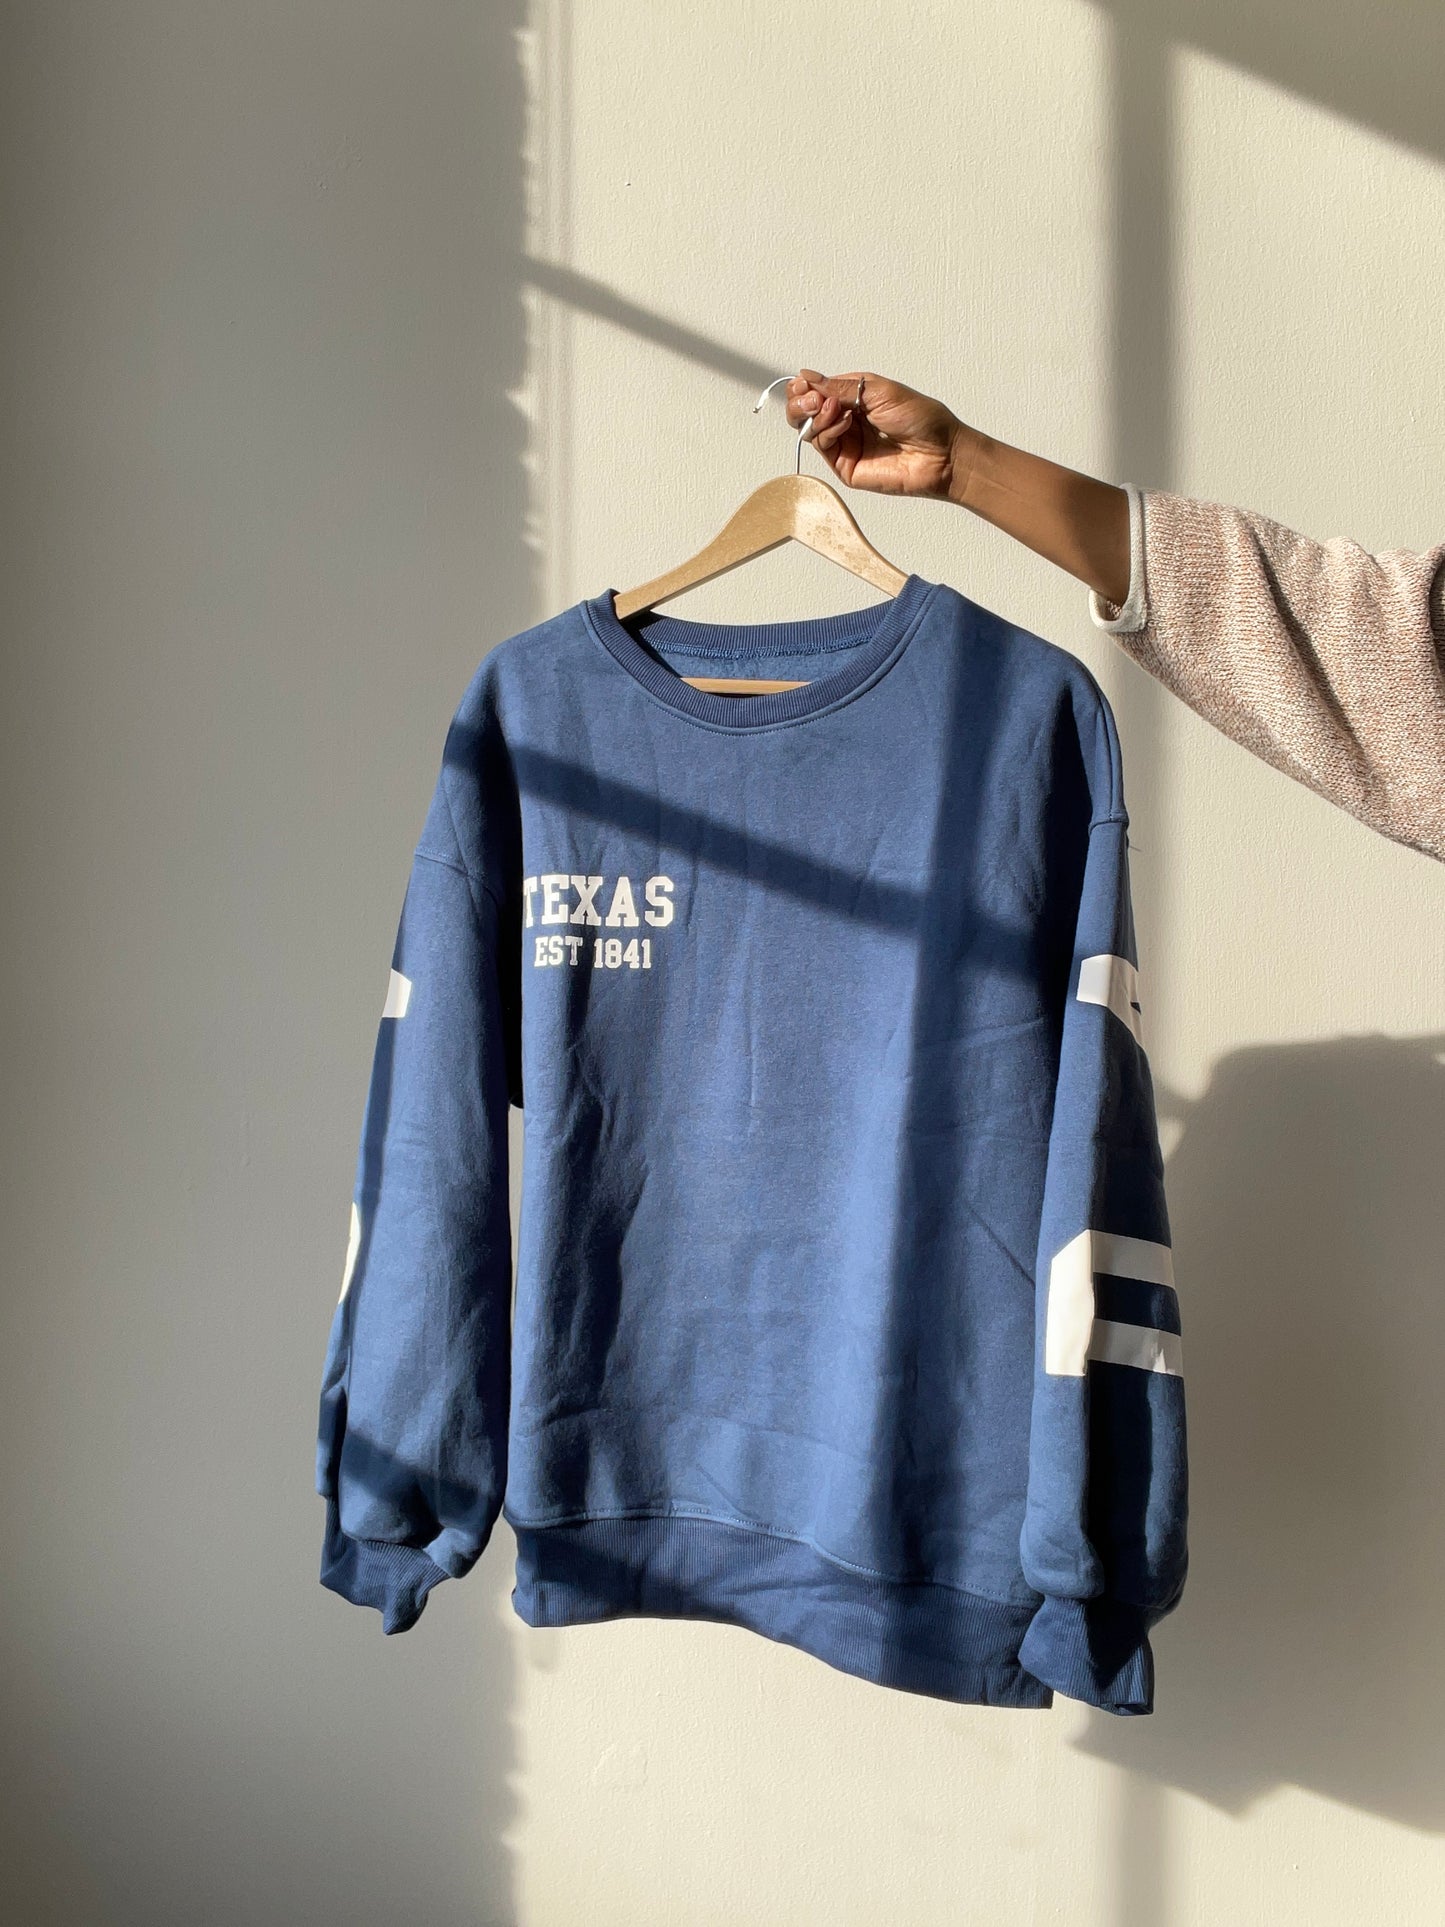 Dallas Texas Cotton Sweatshirt Pullover In Vintage Navy